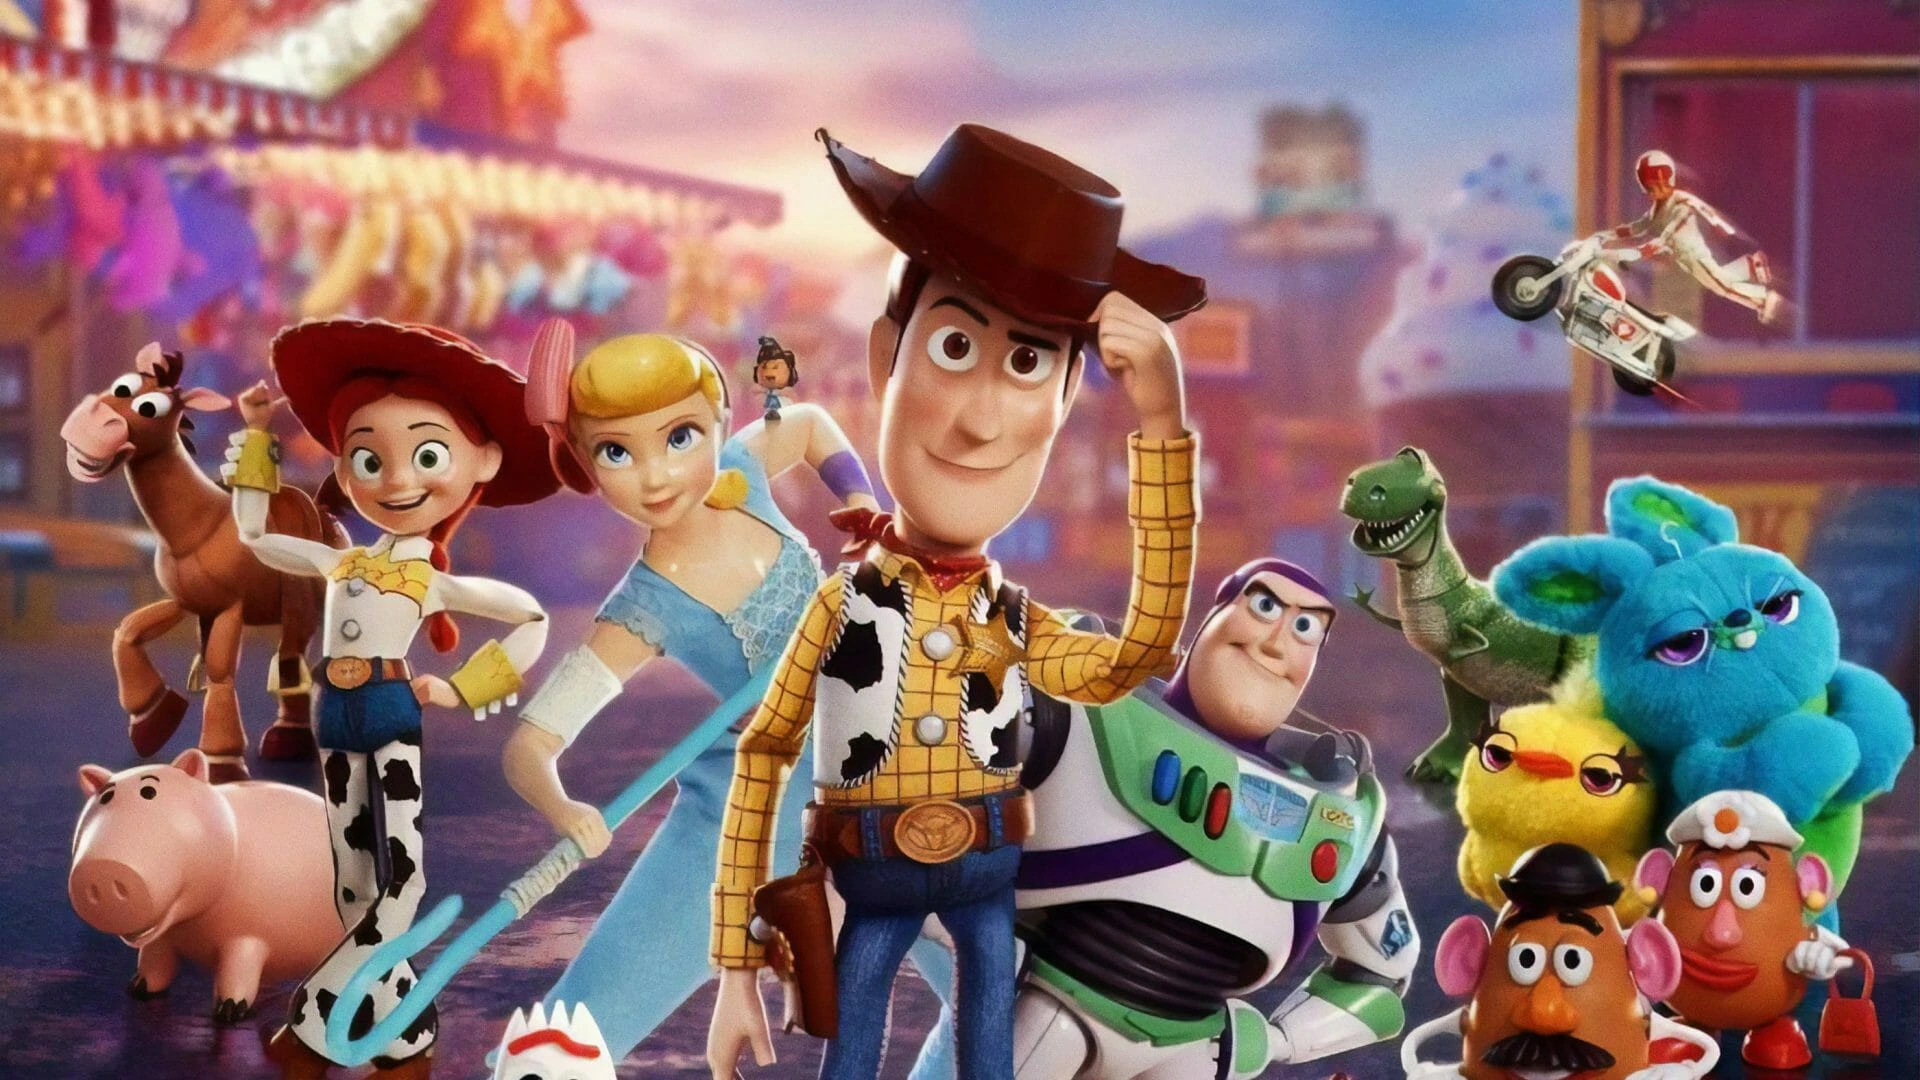 Diretor da Pixar defende produção de Toy Story 5 - NerdBunker